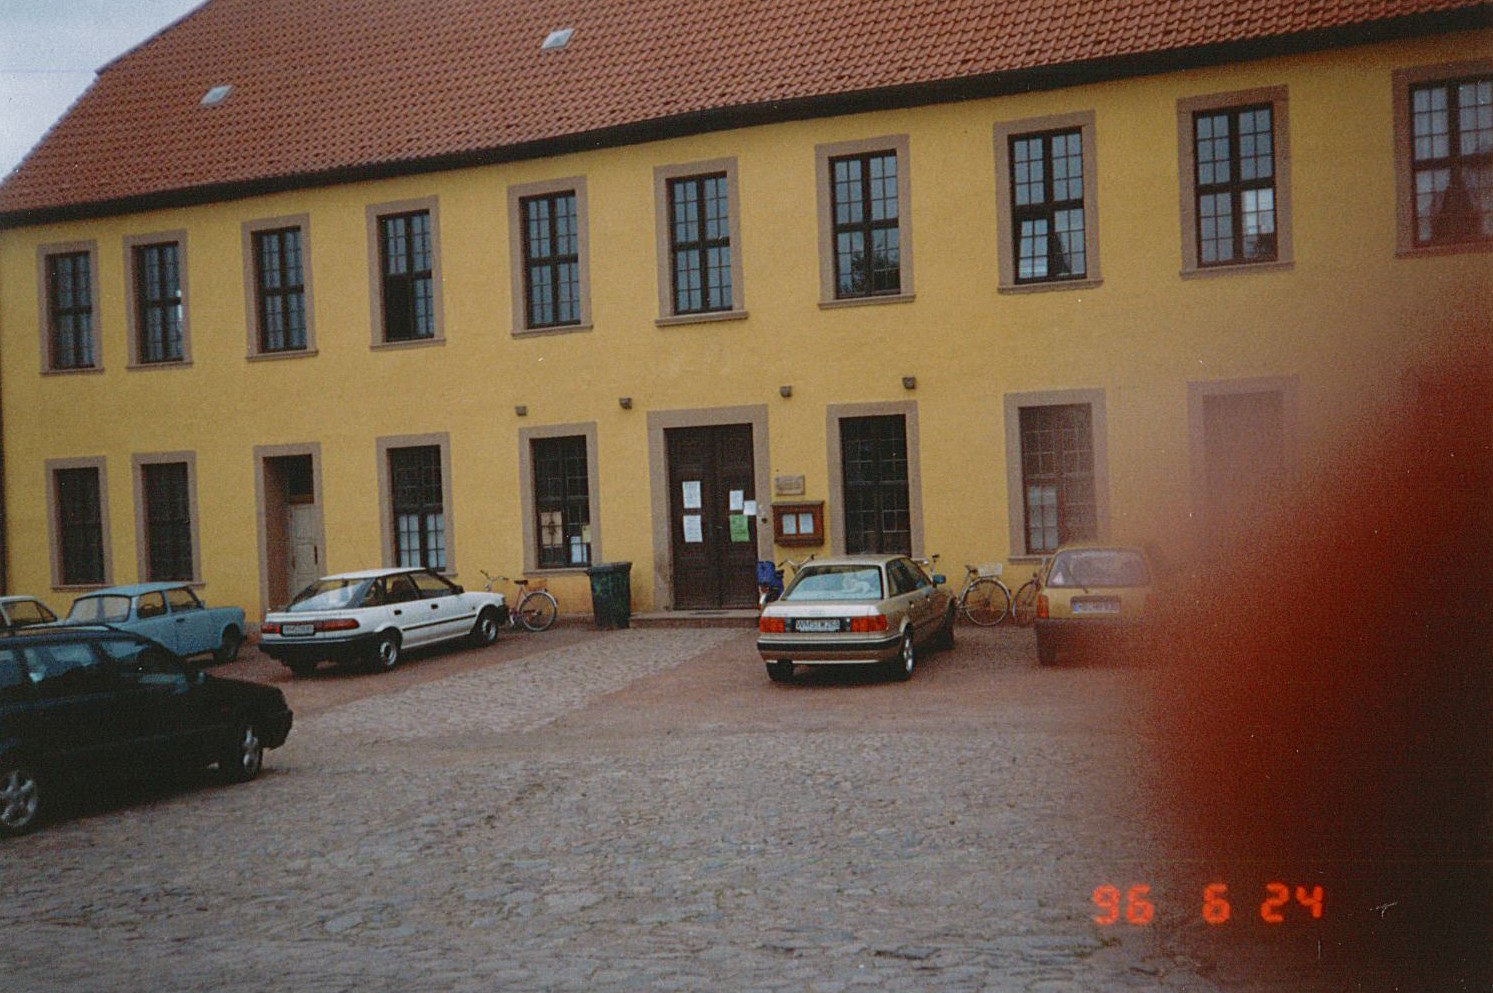 Stadtansicht Wolmirstedt - Bürgerhaus / Domänenpächterhaus, 24.06.1996 (Museum Wolmirstedt RR-F)